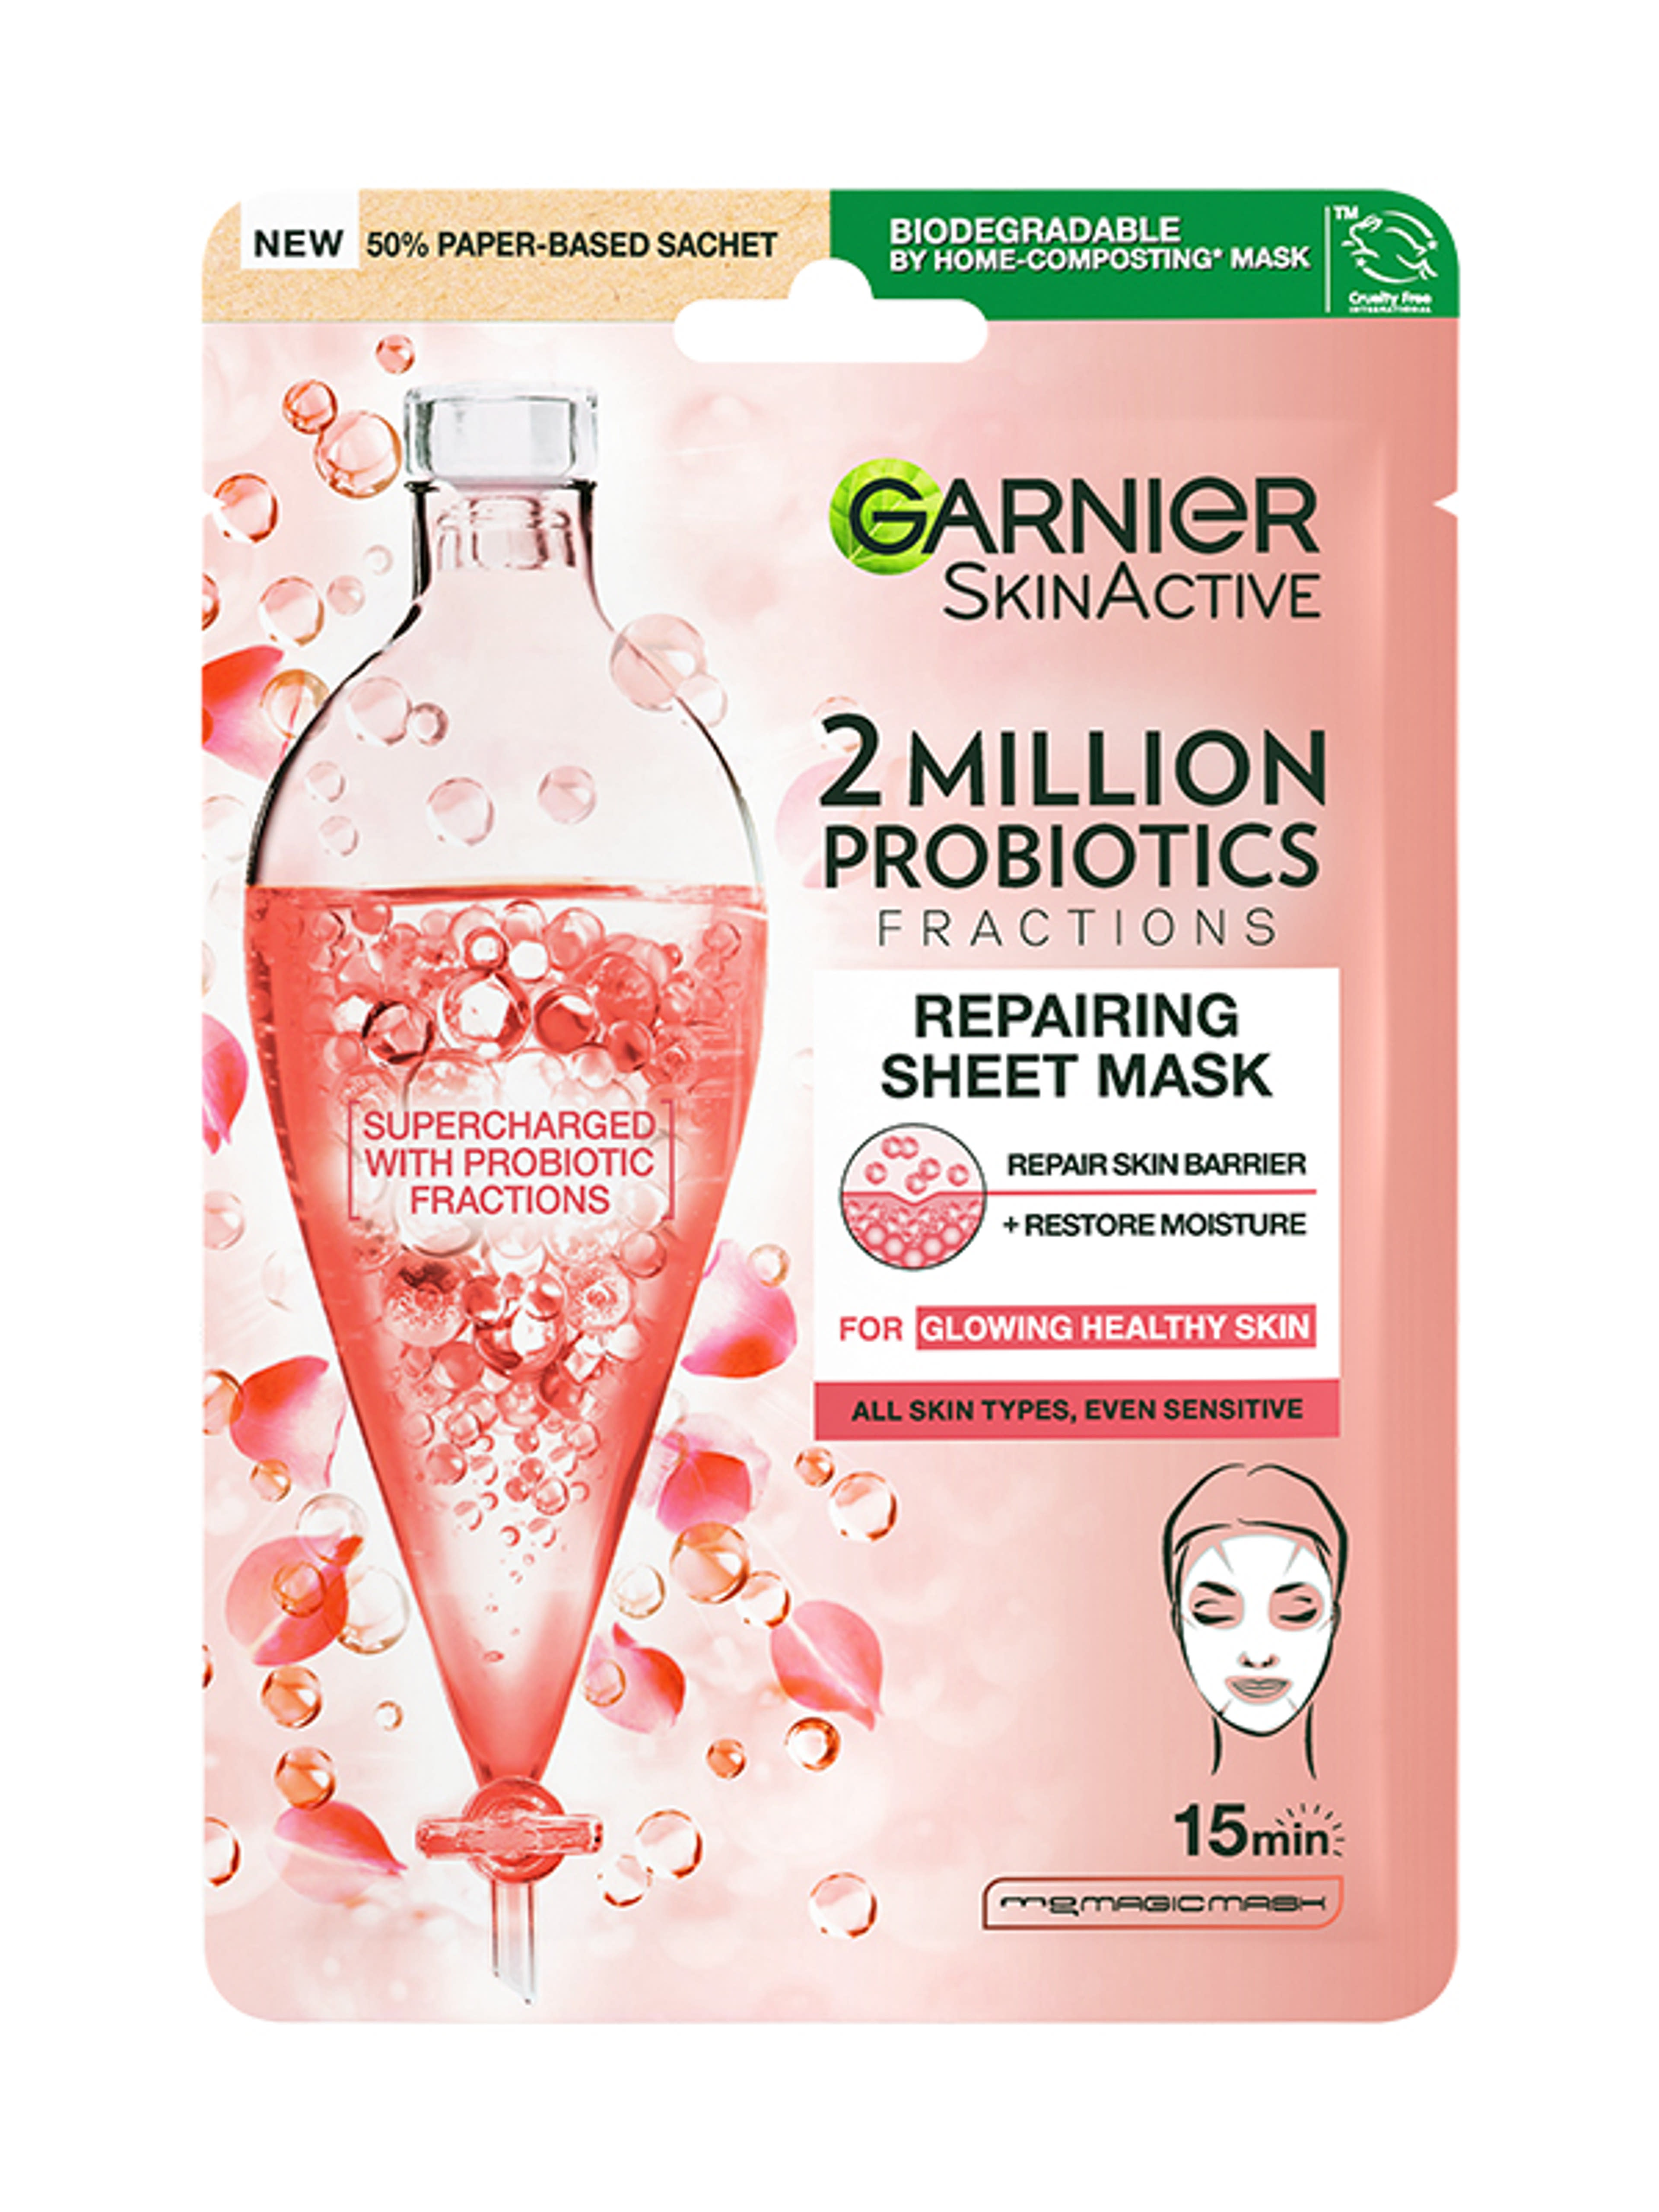 Garnier Skin Naturals texilmaszk probiotikummal  - 1 db